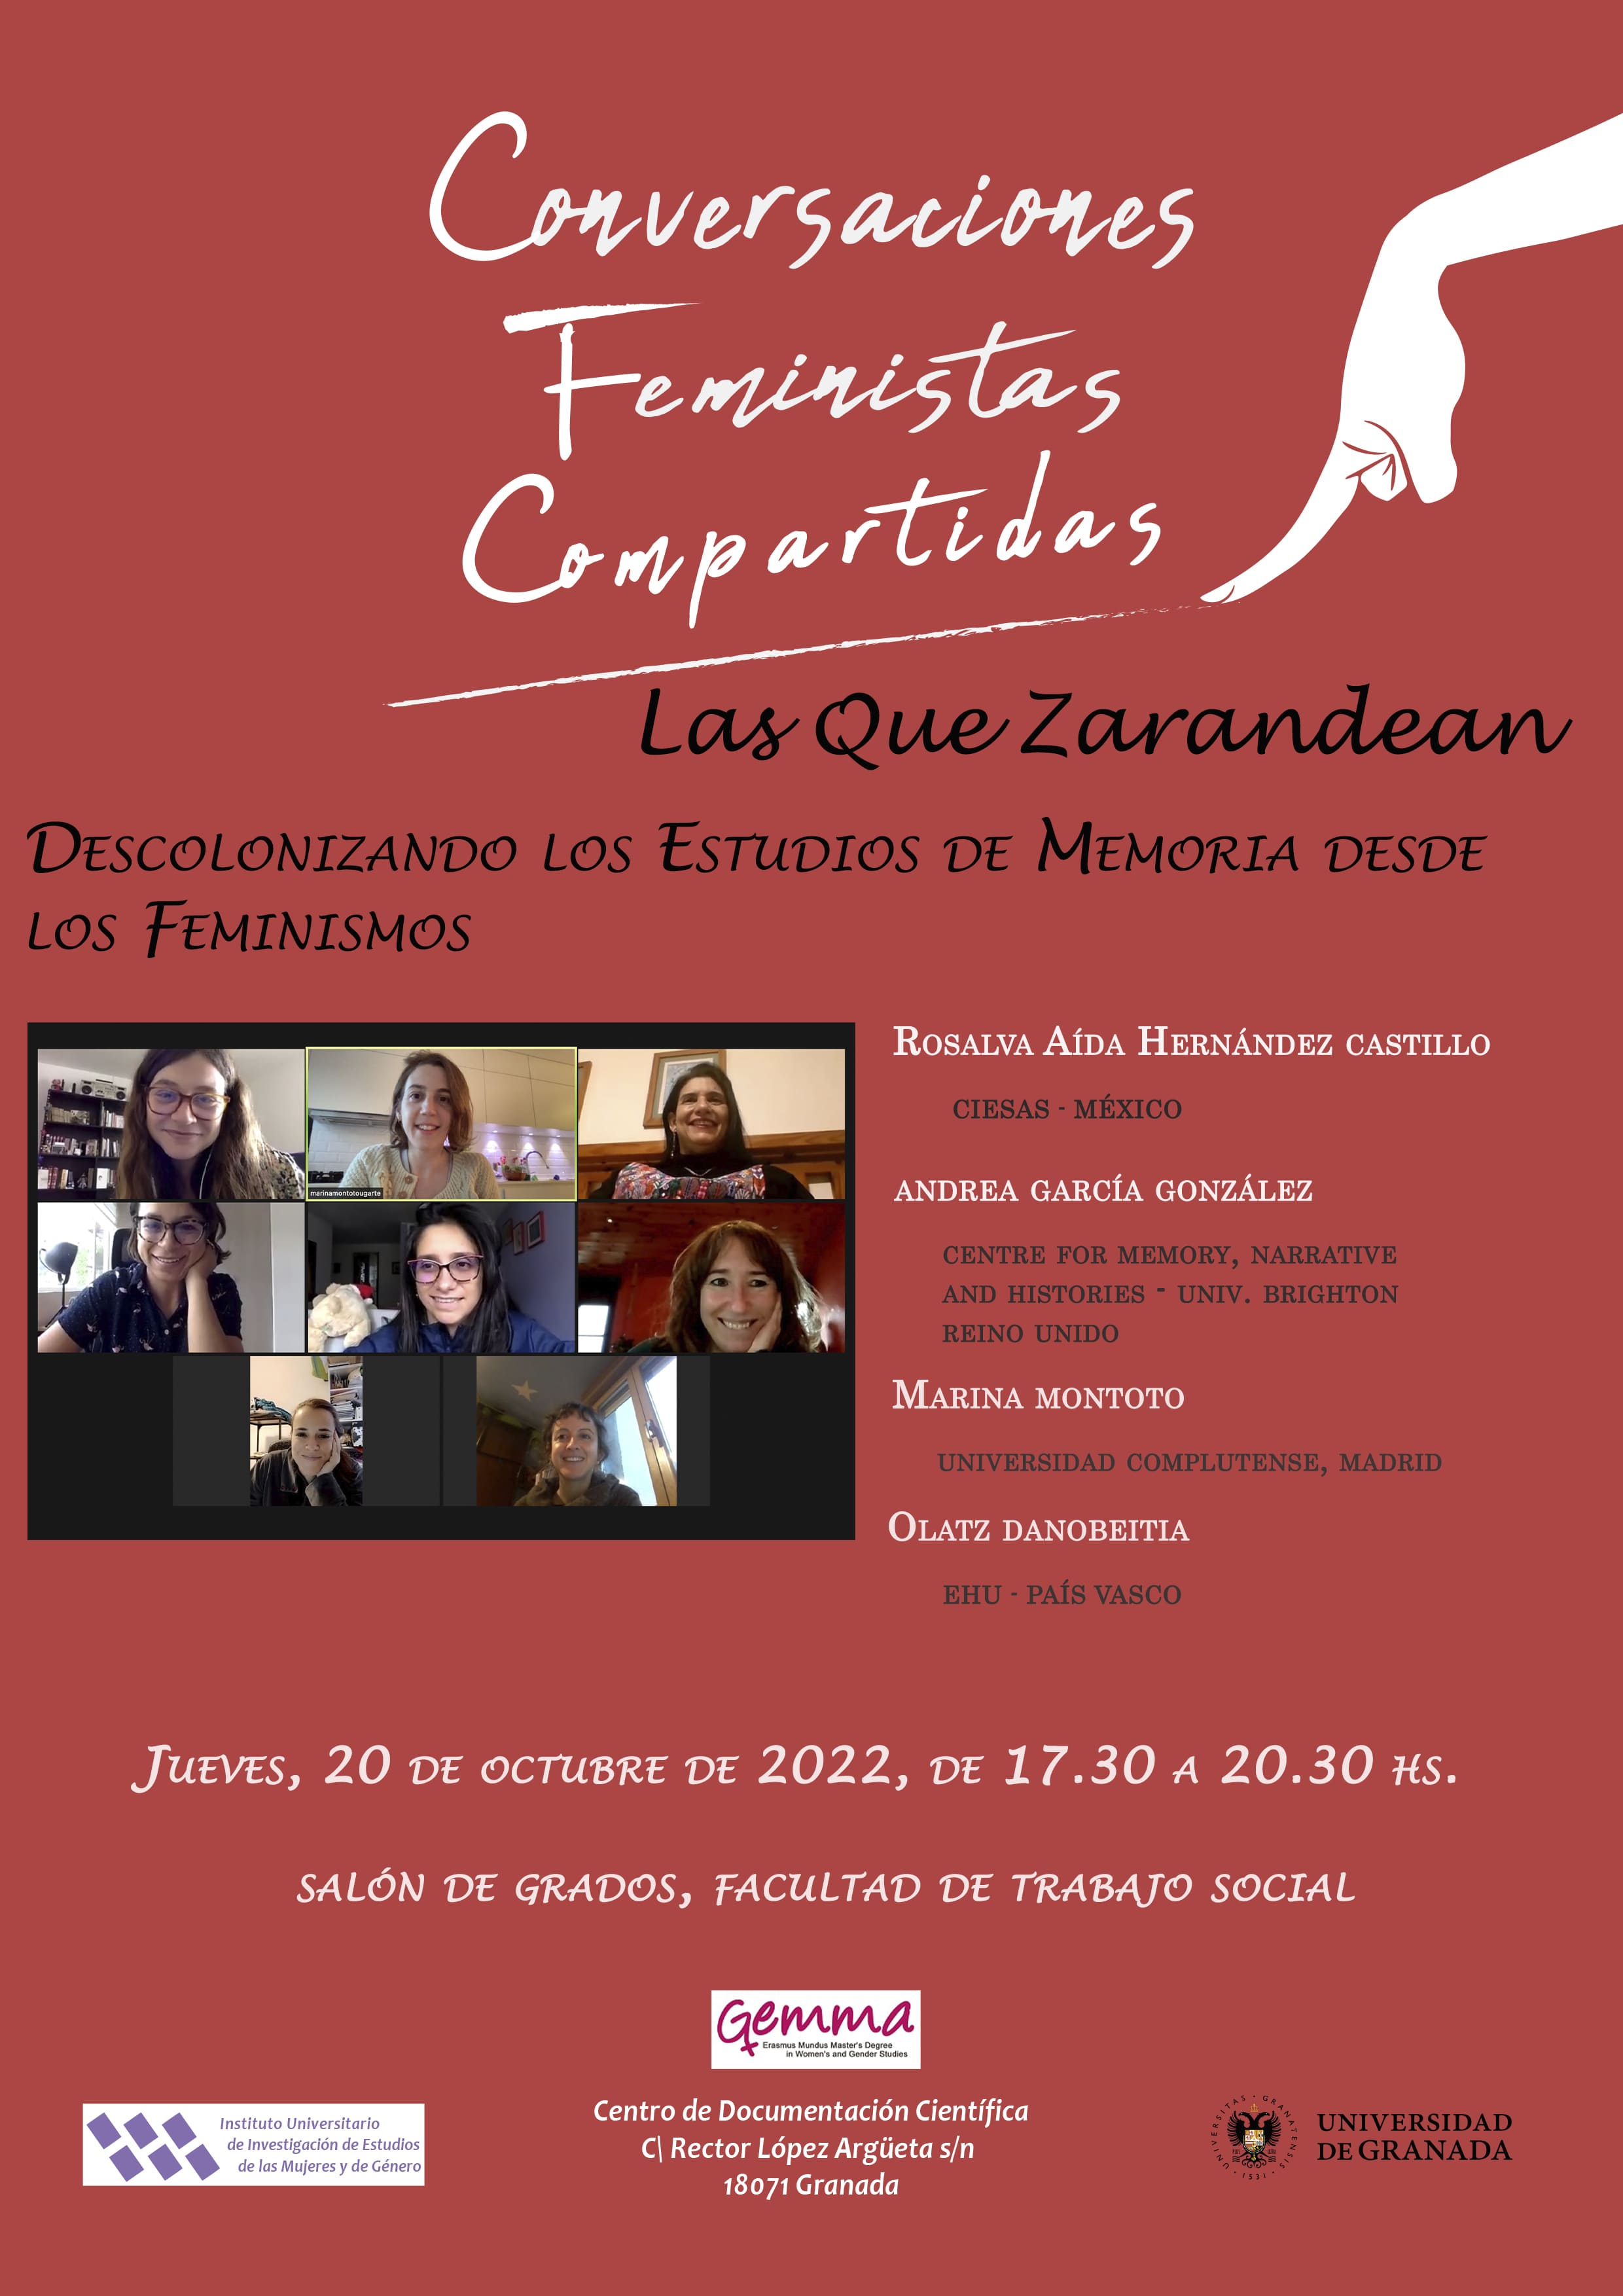 Poster of the Conversation "Las Que Zarandean"